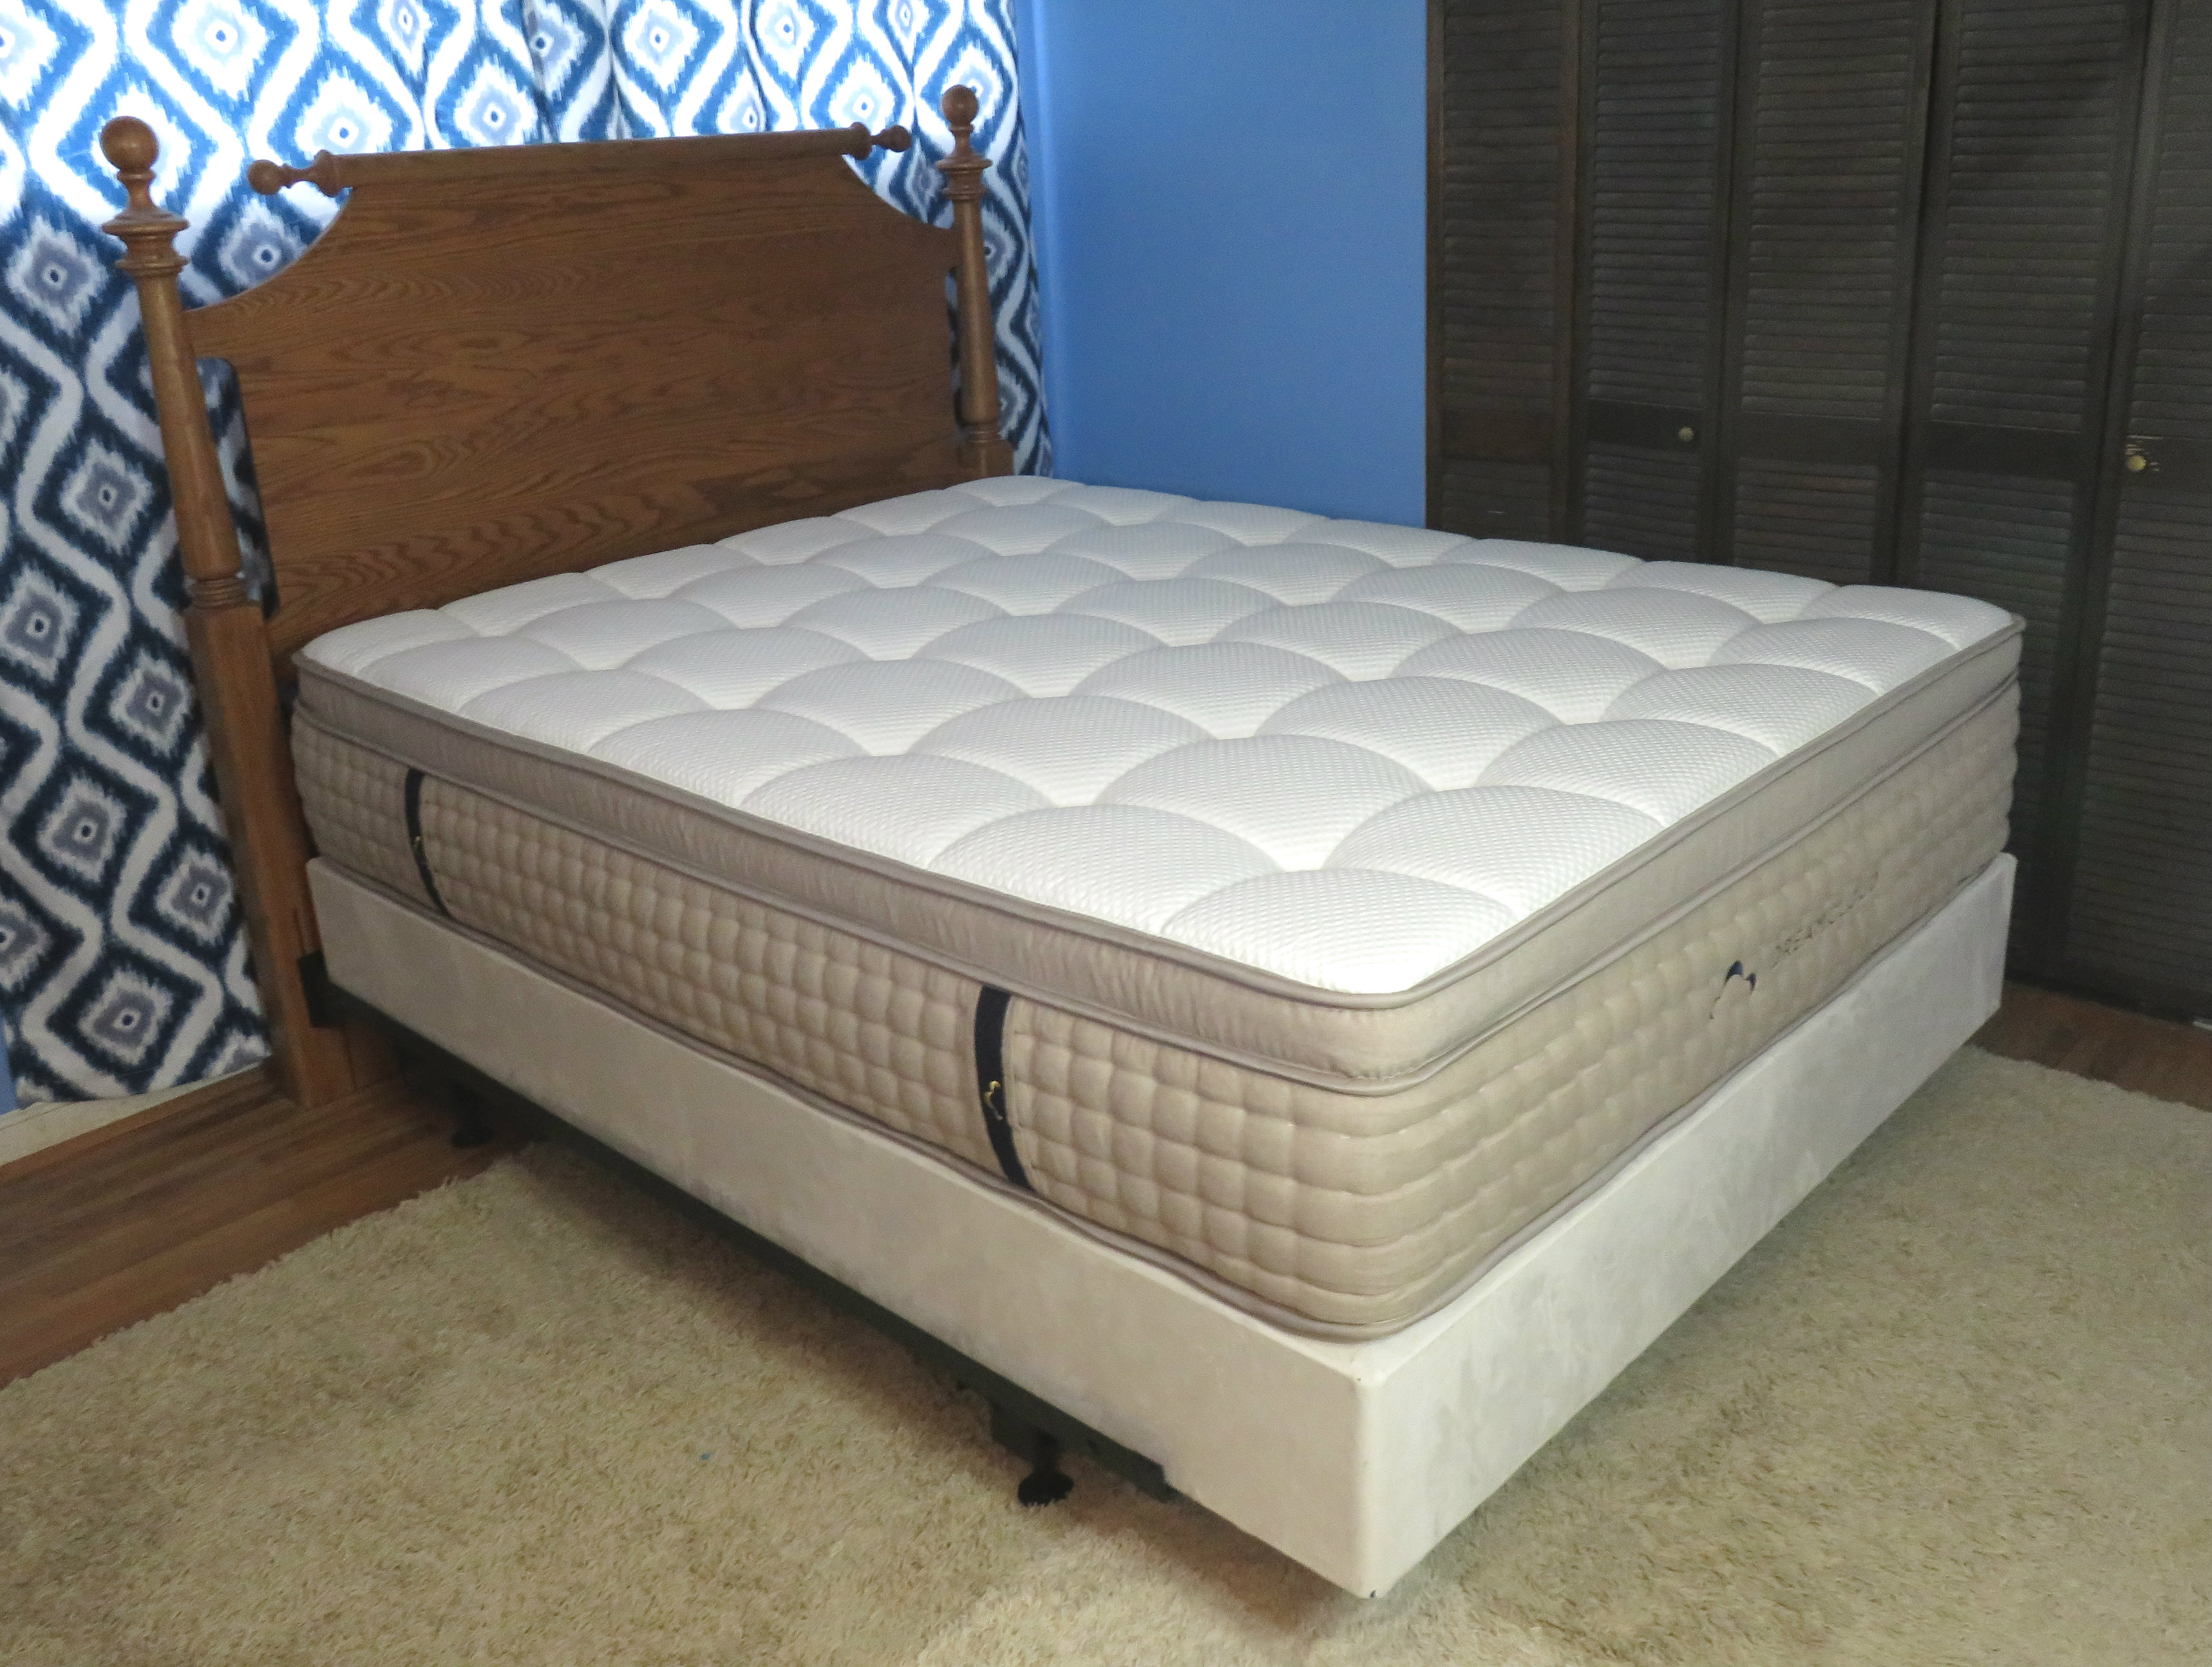 dreamcloud mattress 14 inch